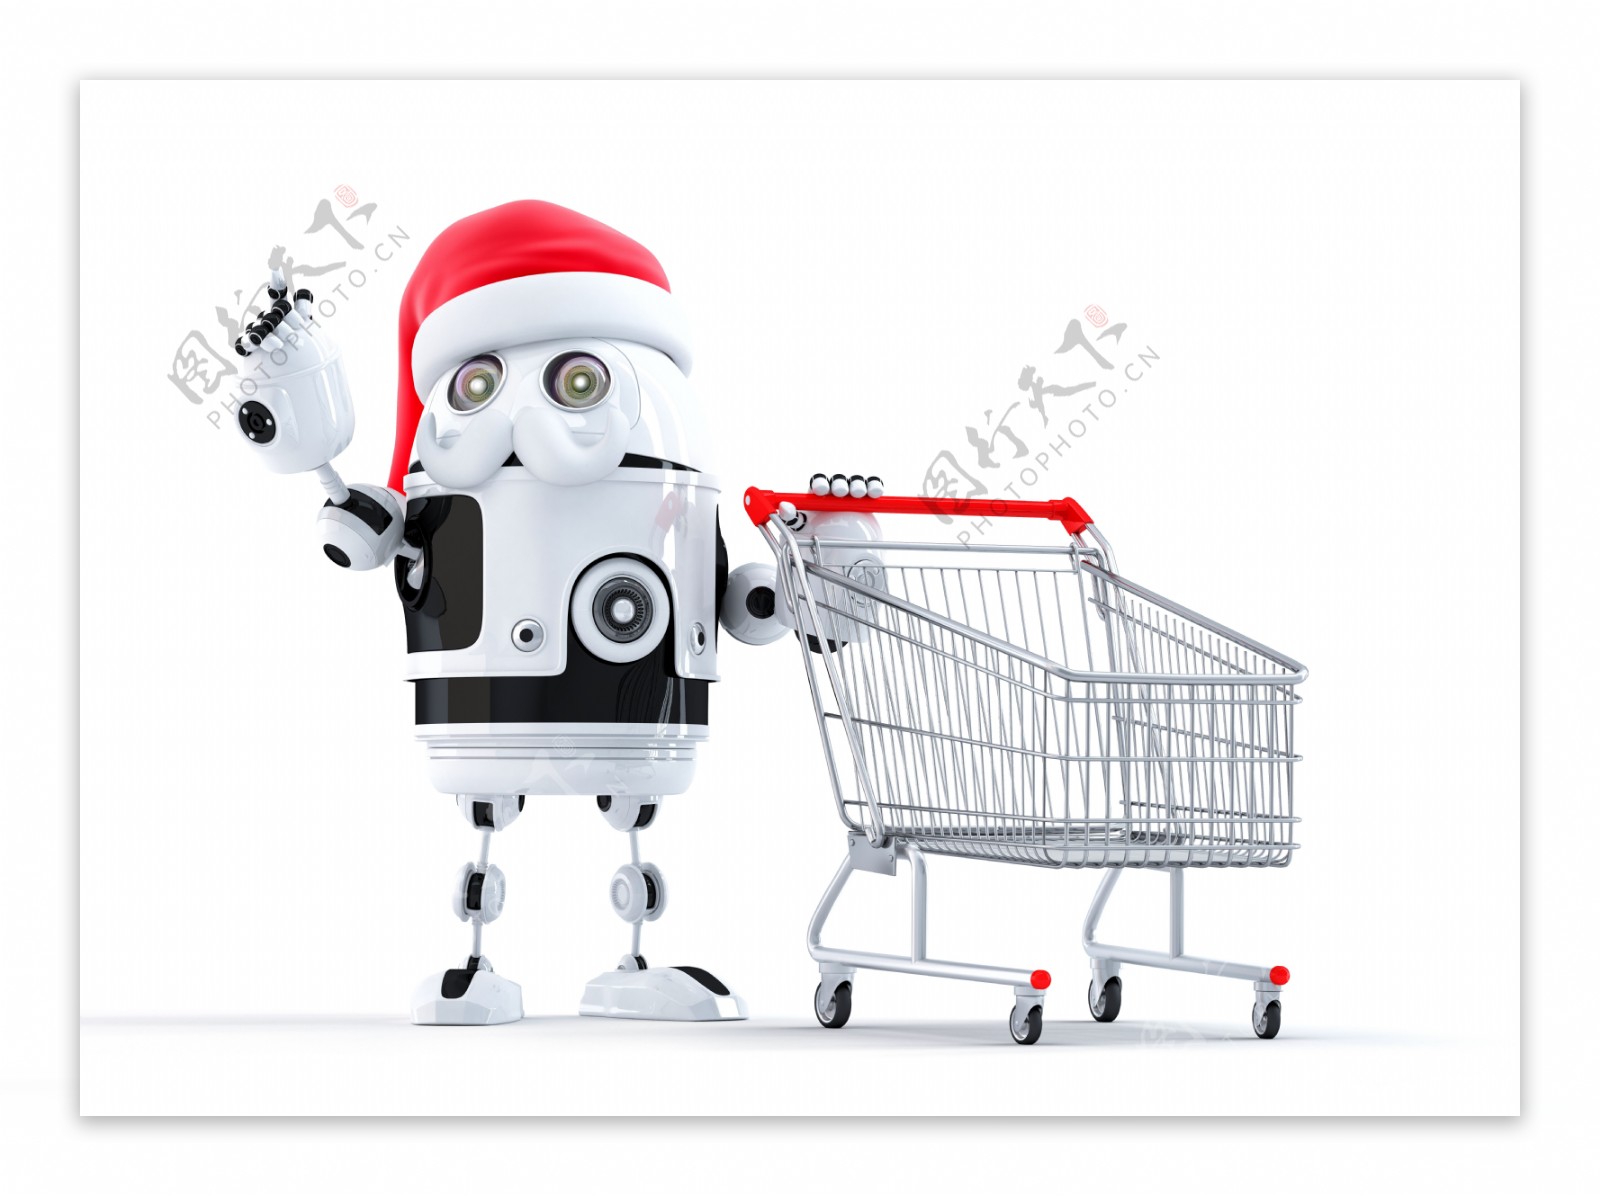 机器人的圣诞购物车指向的对象